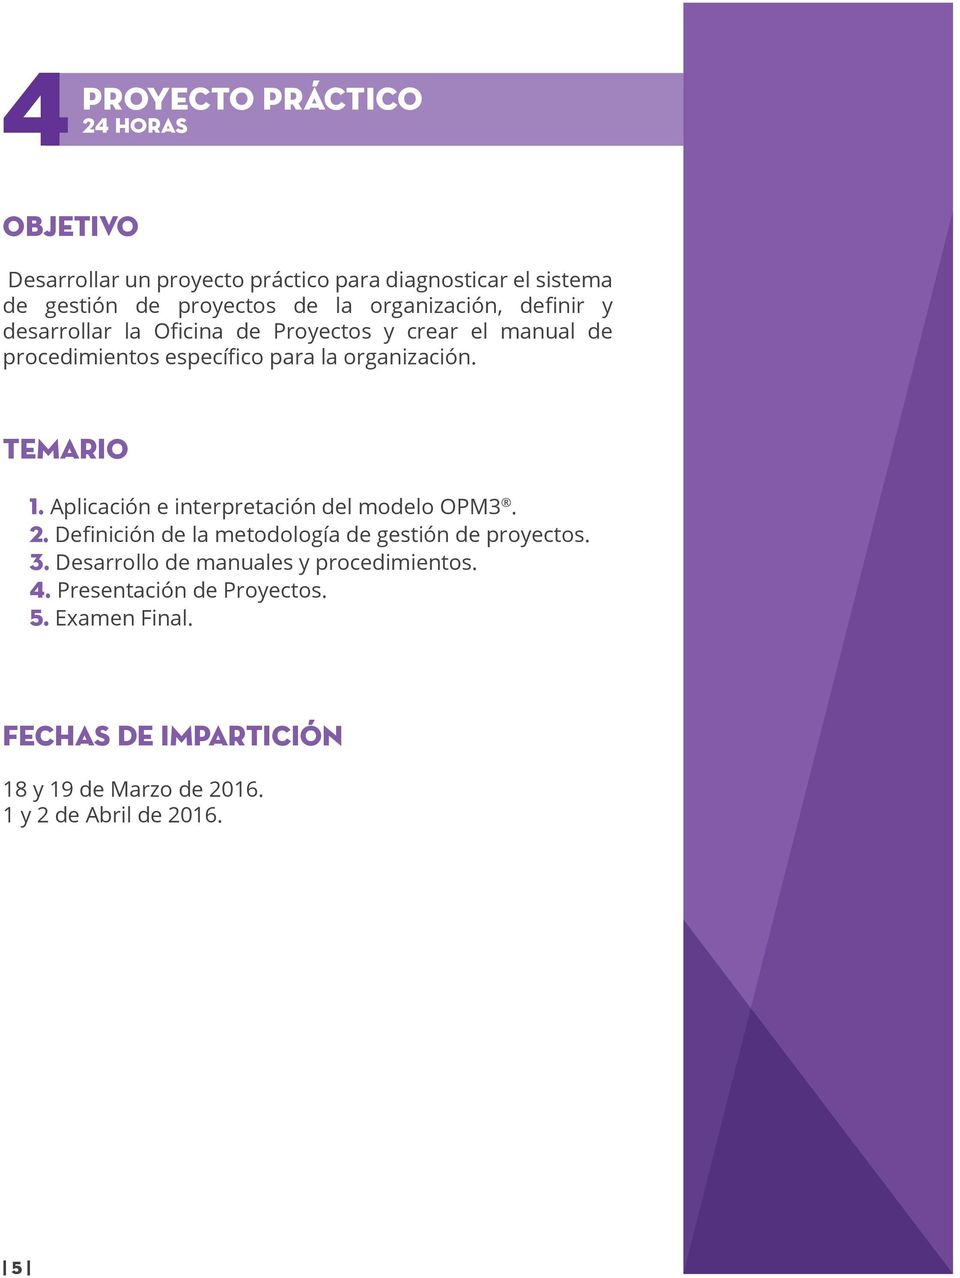 TEMARIO 1. Aplicación e interpretación del modelo OPM3. 2. Definición de la metodología de gestión de proyectos. 3.